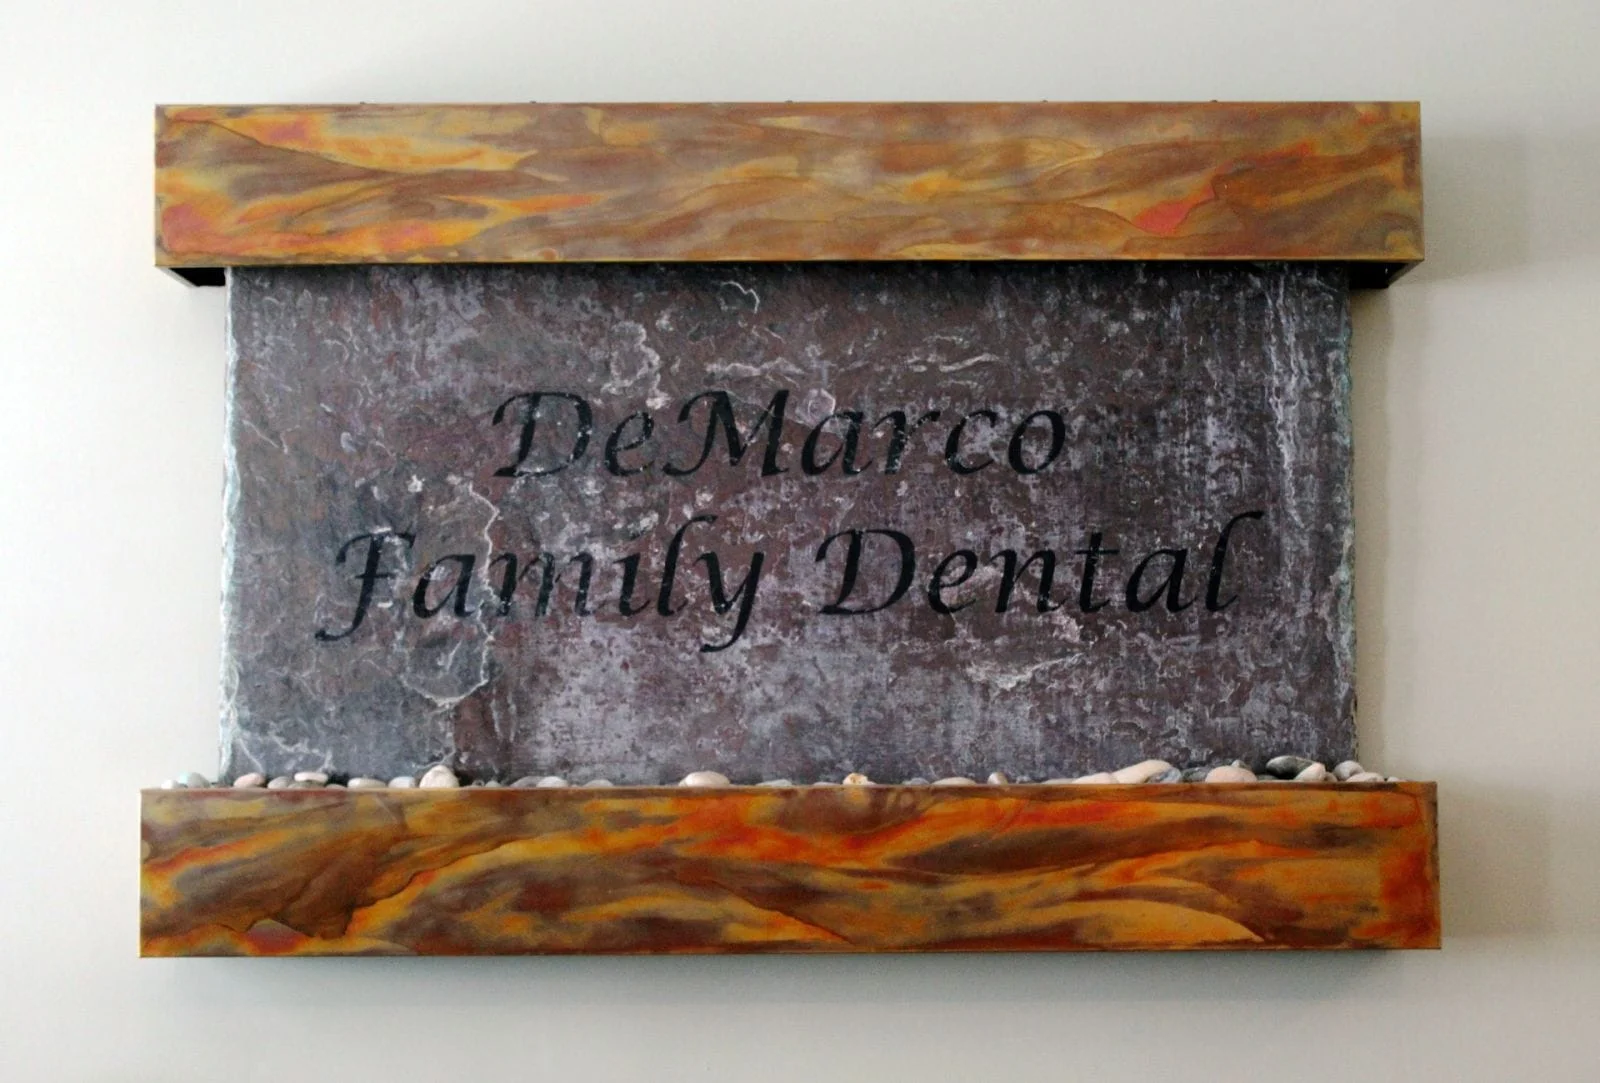 Demarco Family Dental